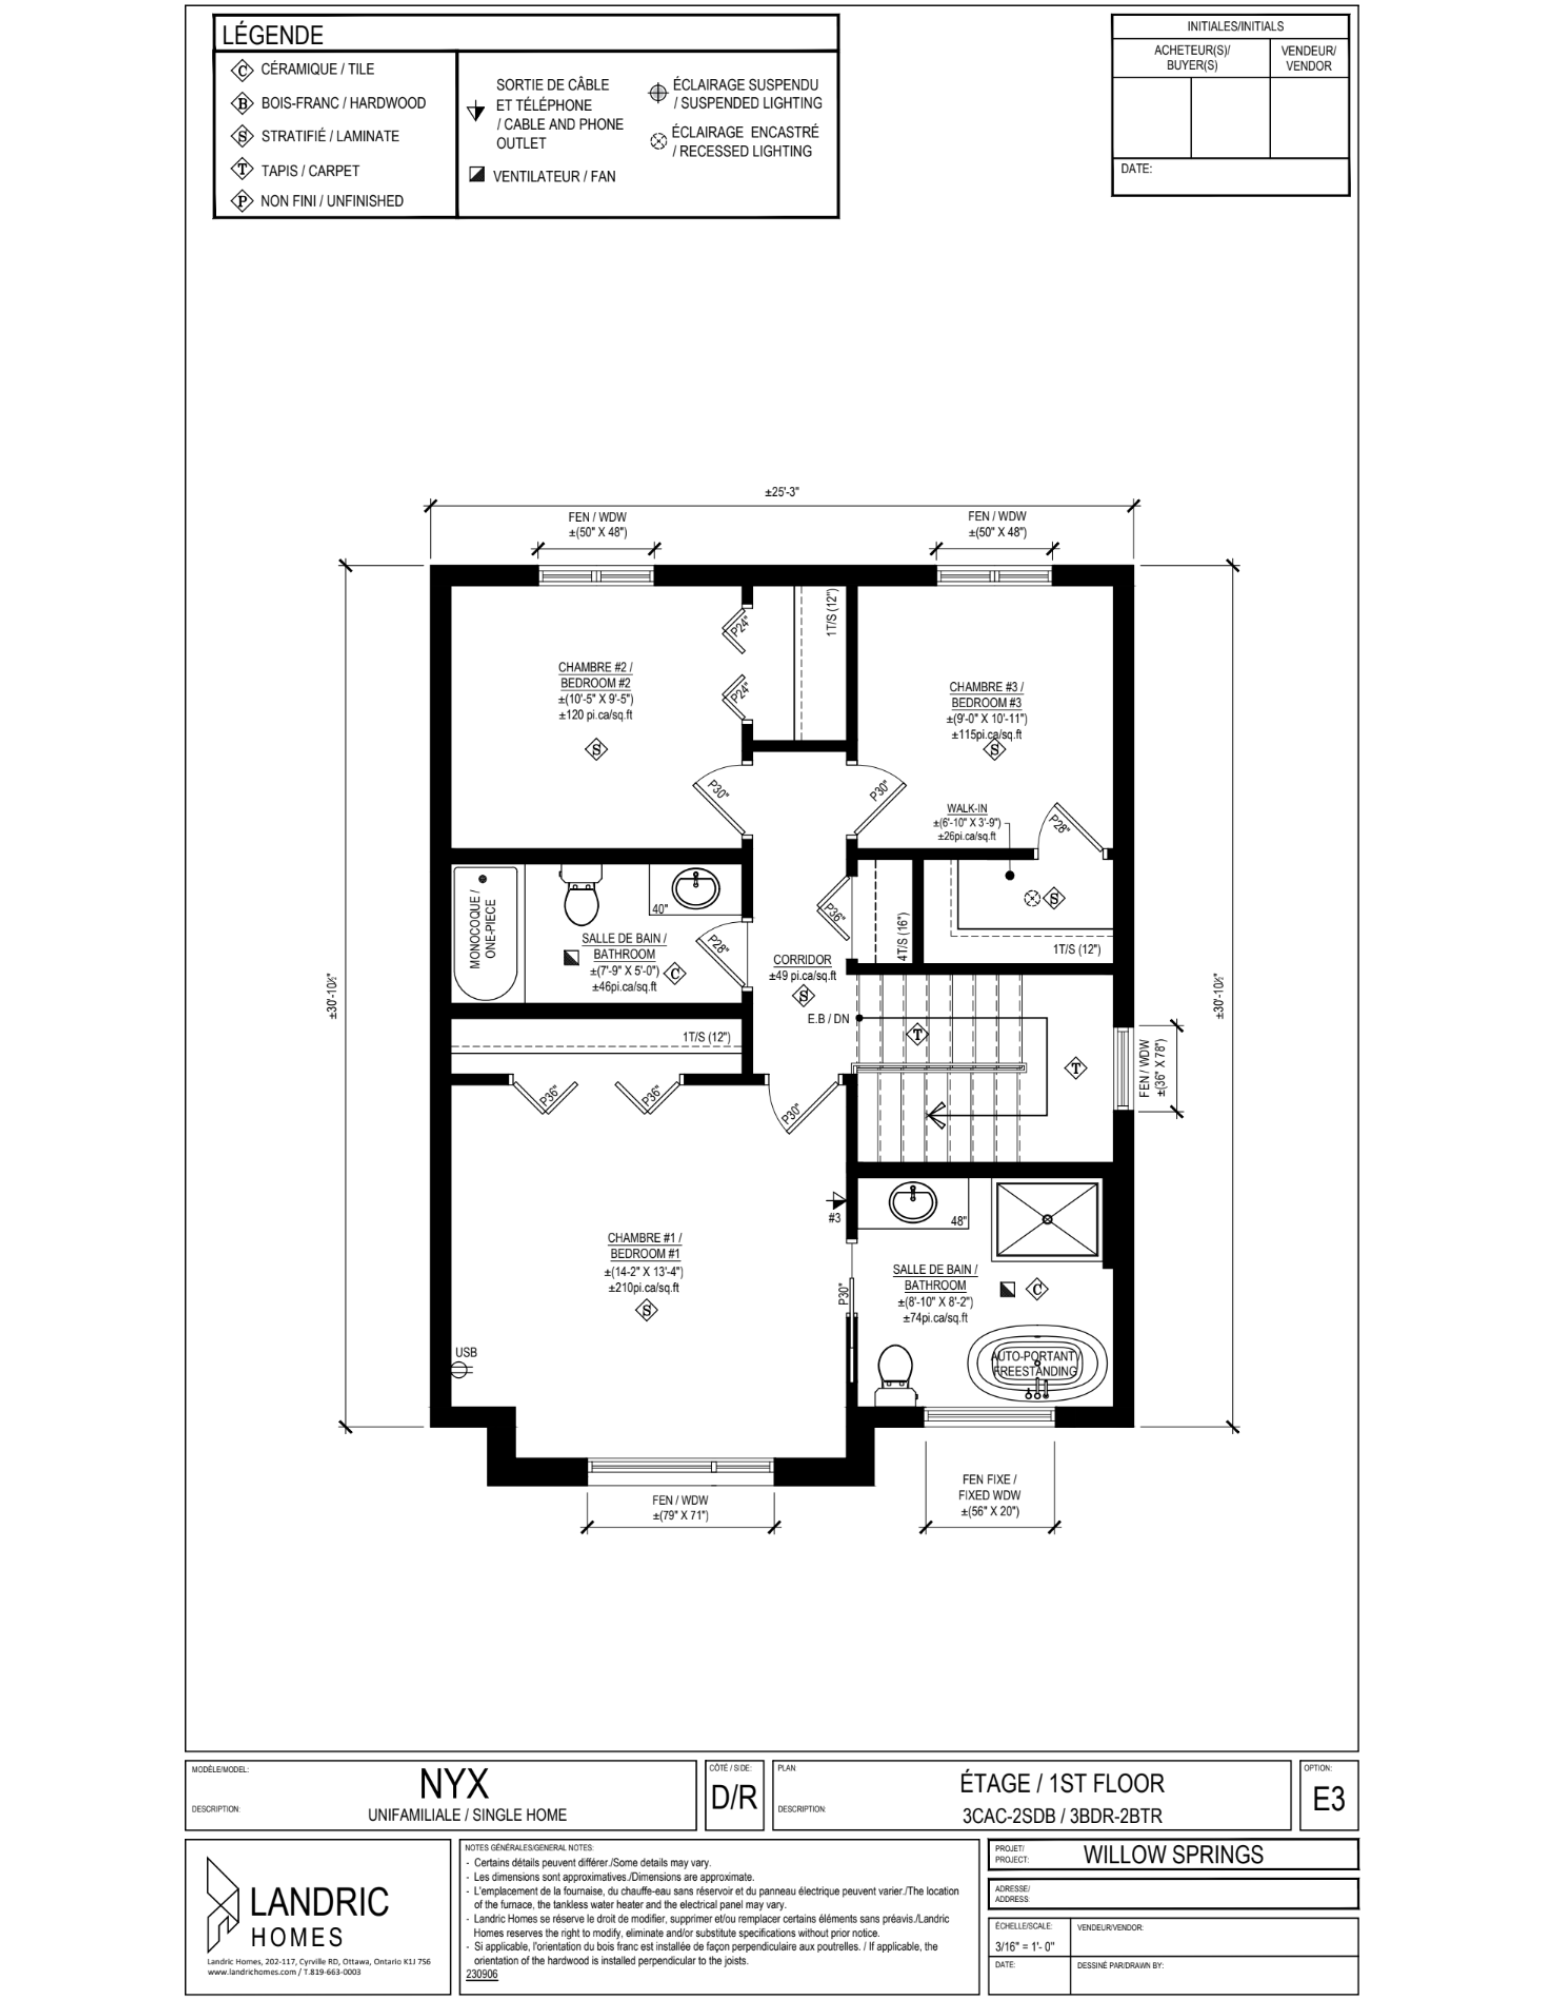 Willow Springs, Limoges floor plans (21)